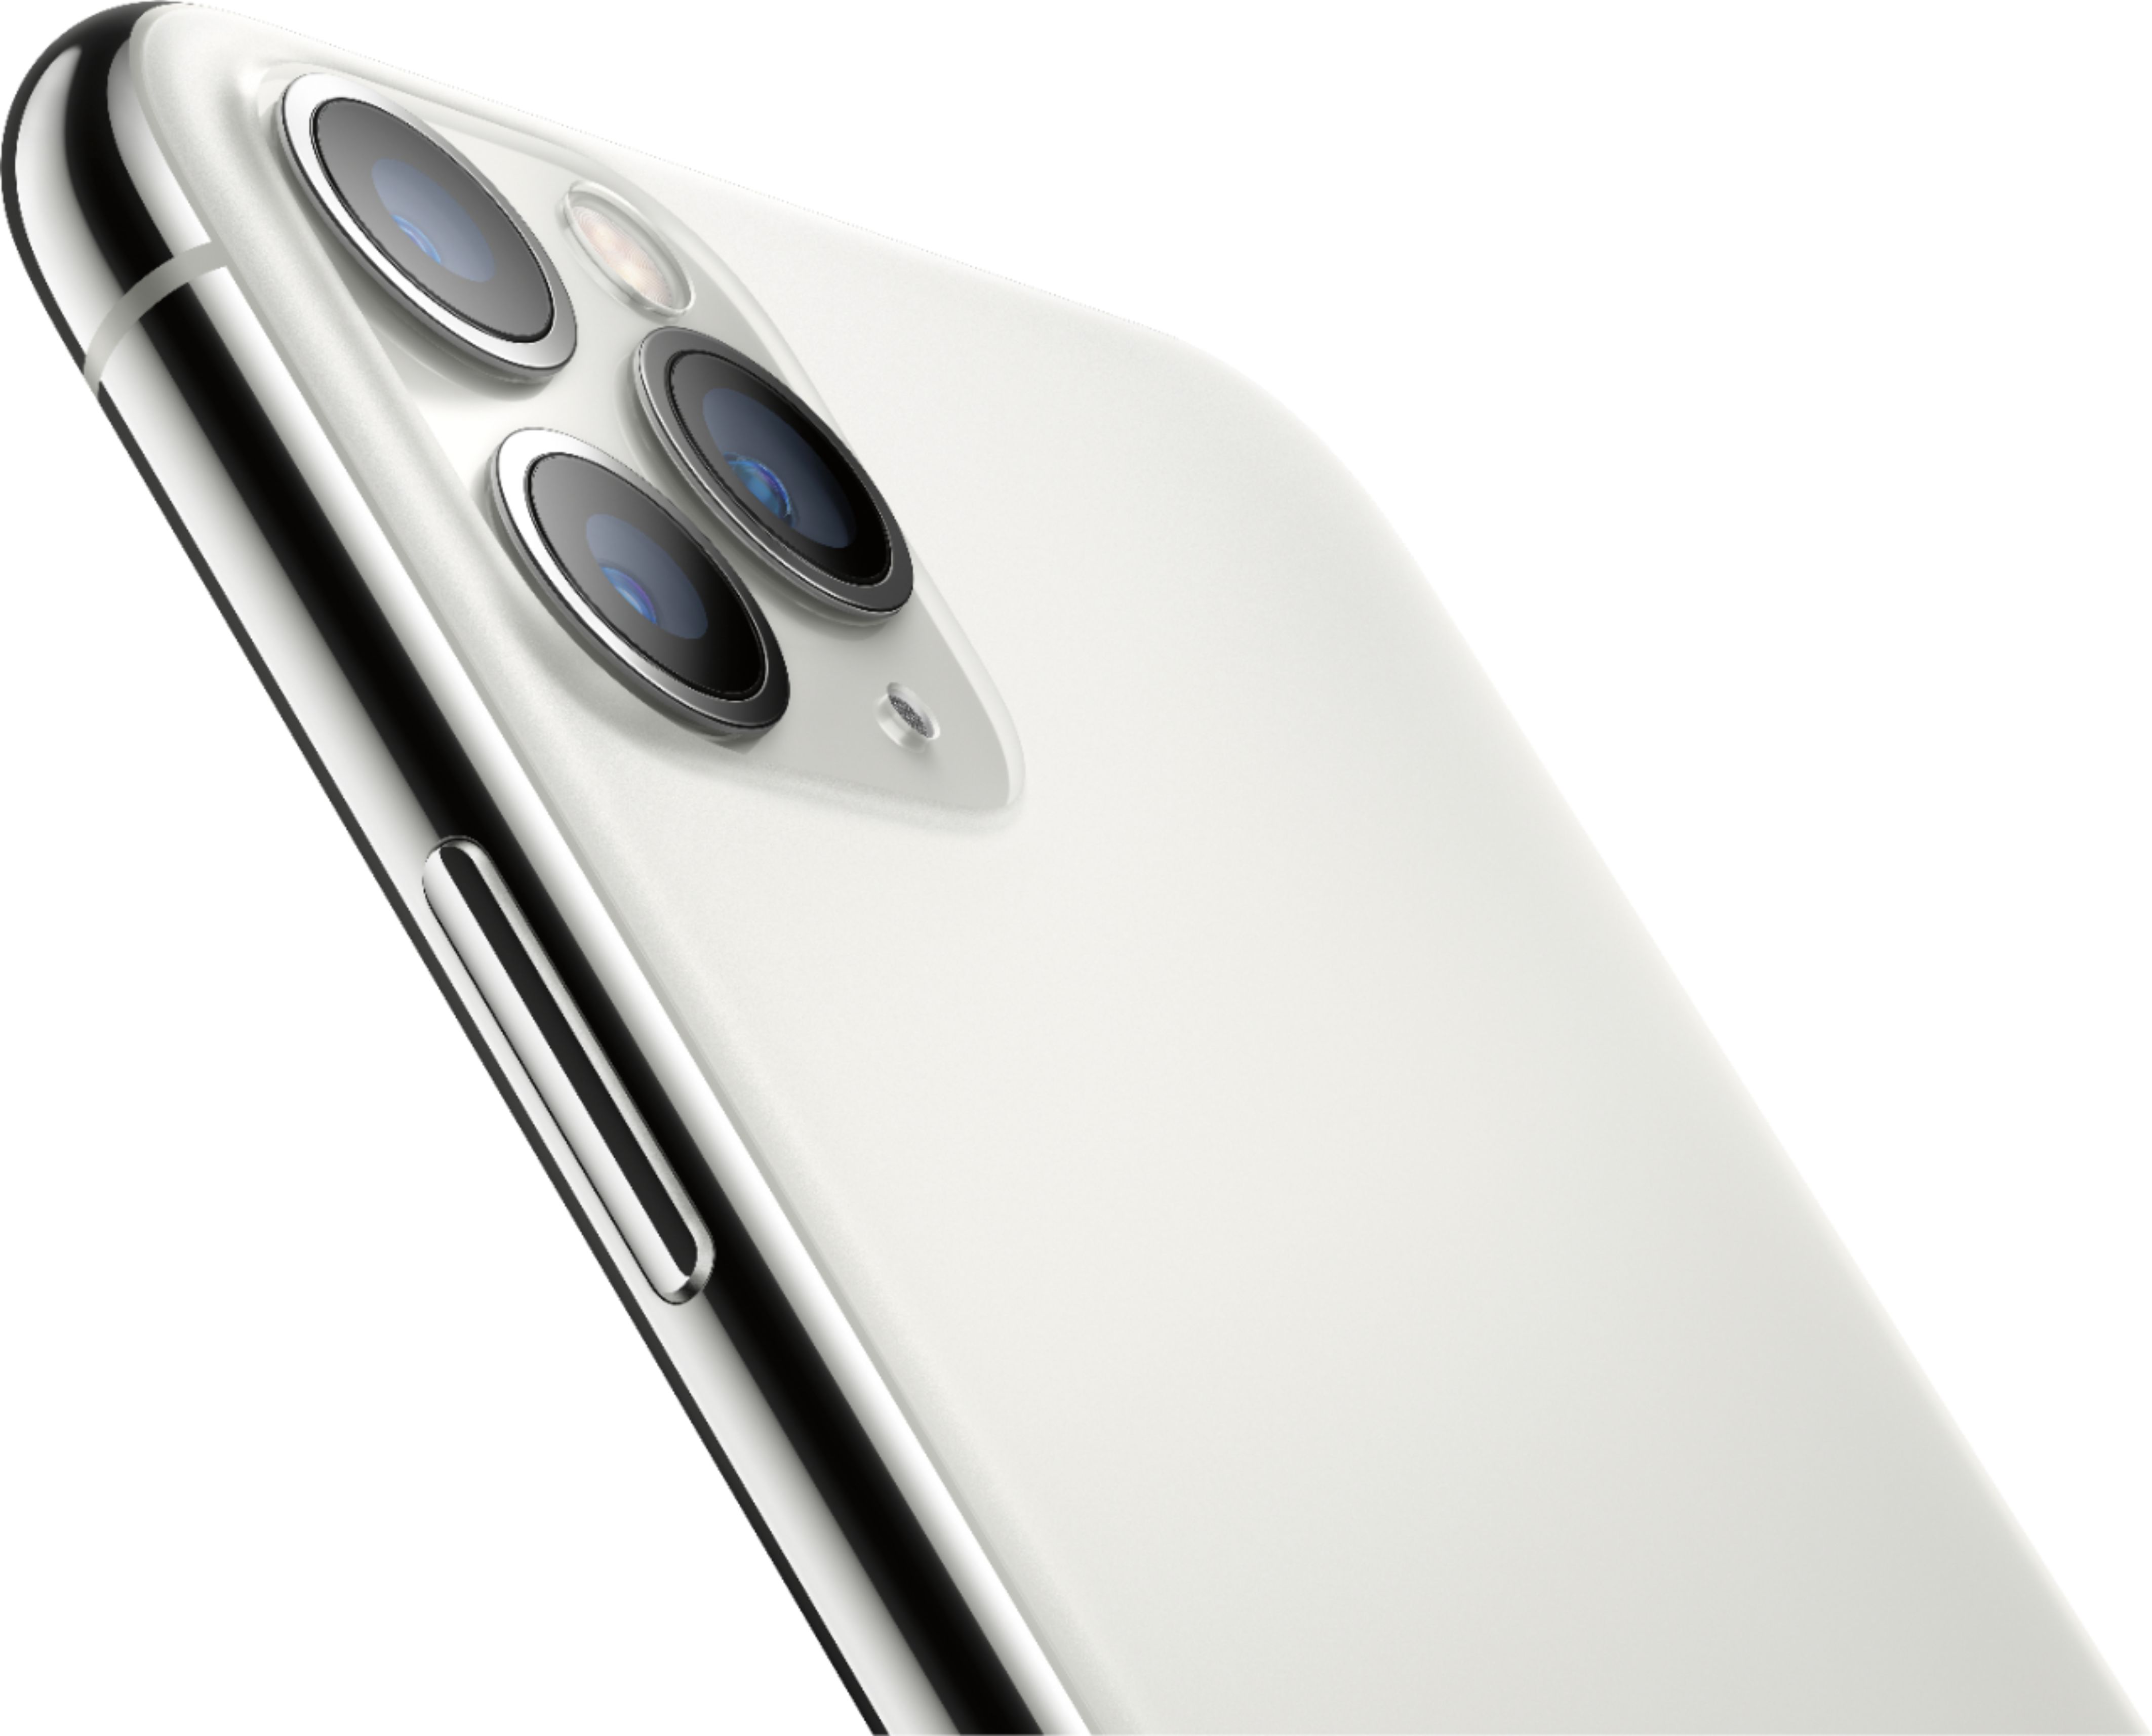 Apple iPhone 11 Pro Max 256GB Silver (Unlocked) MWGL2LL/A - Best Buy